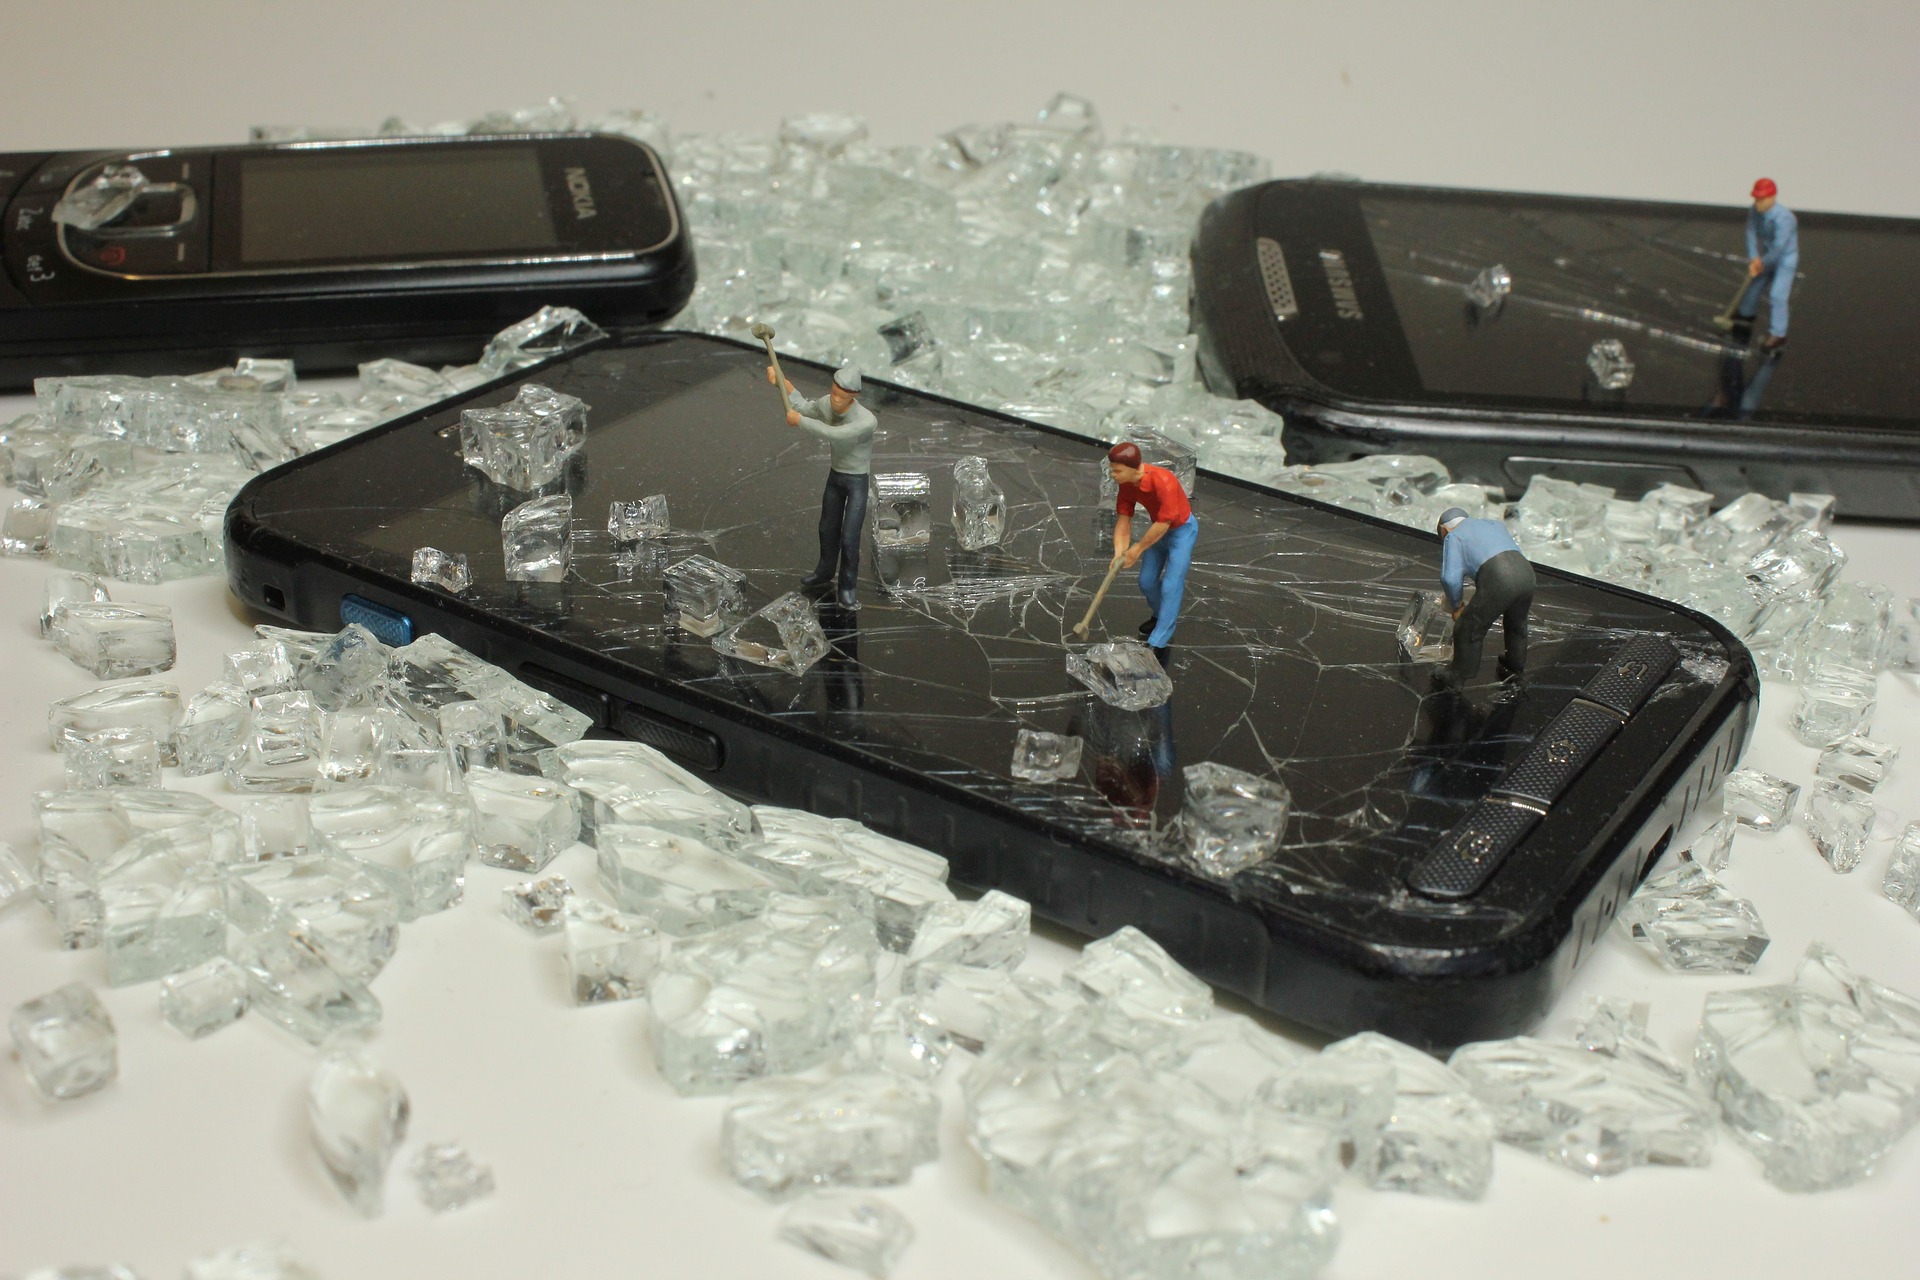 Drei Handys liegen inmitten Kristallen, drei kleine Figuren stehen auf einem Smartphone und hämmern.